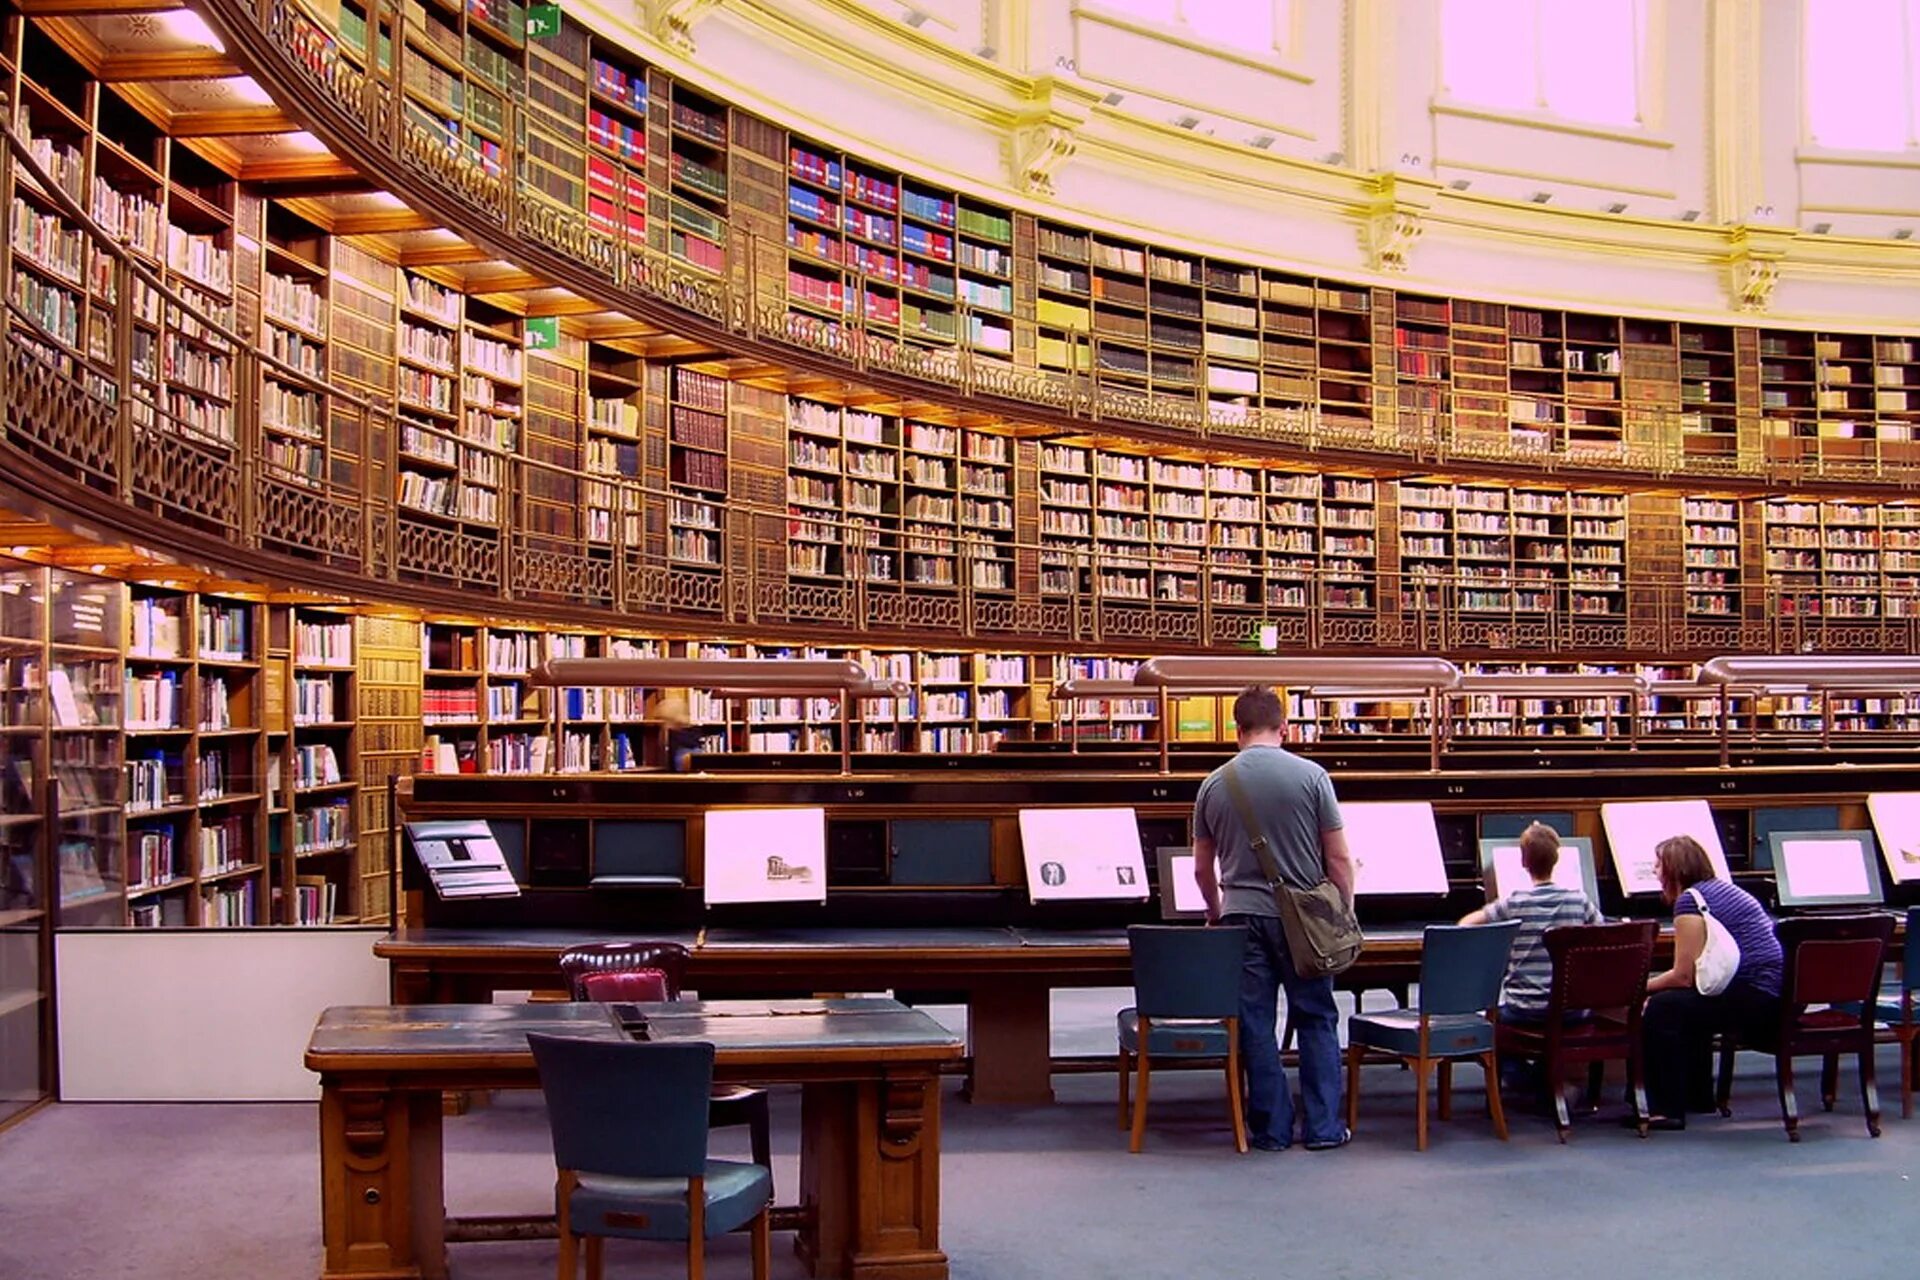 Ld library. Библиотека британского музея. Национальная библиотека британского музея. Национальная библиотека Великобритании книгохранилище. Библиотека британского музея в Лондоне.